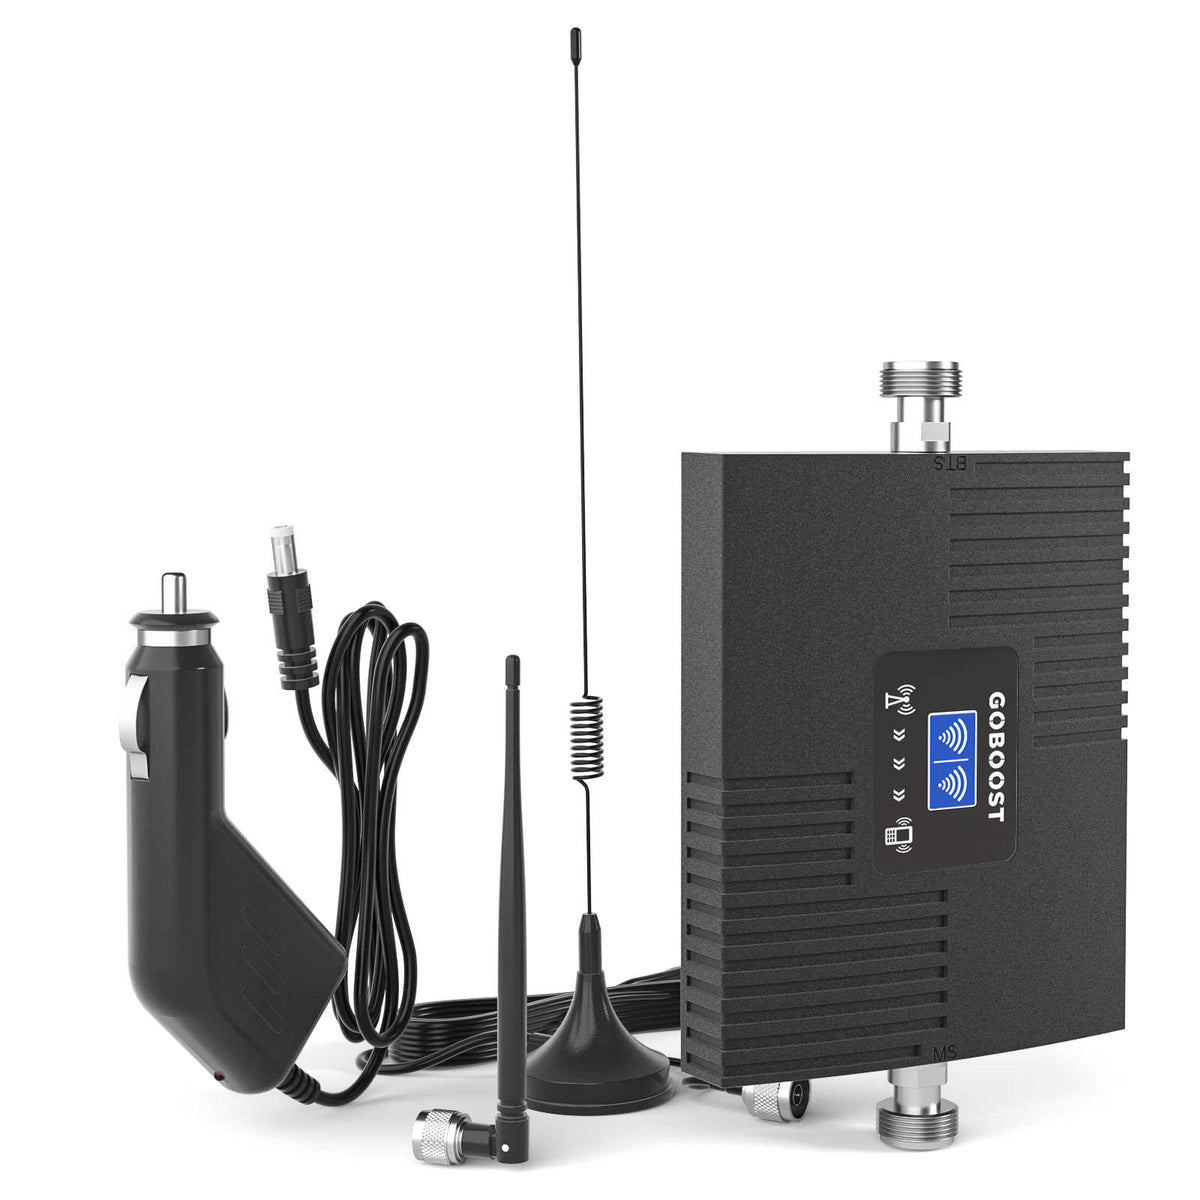 Amplificateur de signal cellulaire GOBOOST pour SUV/camions/fourgonnettes - Chaud à gain élevé